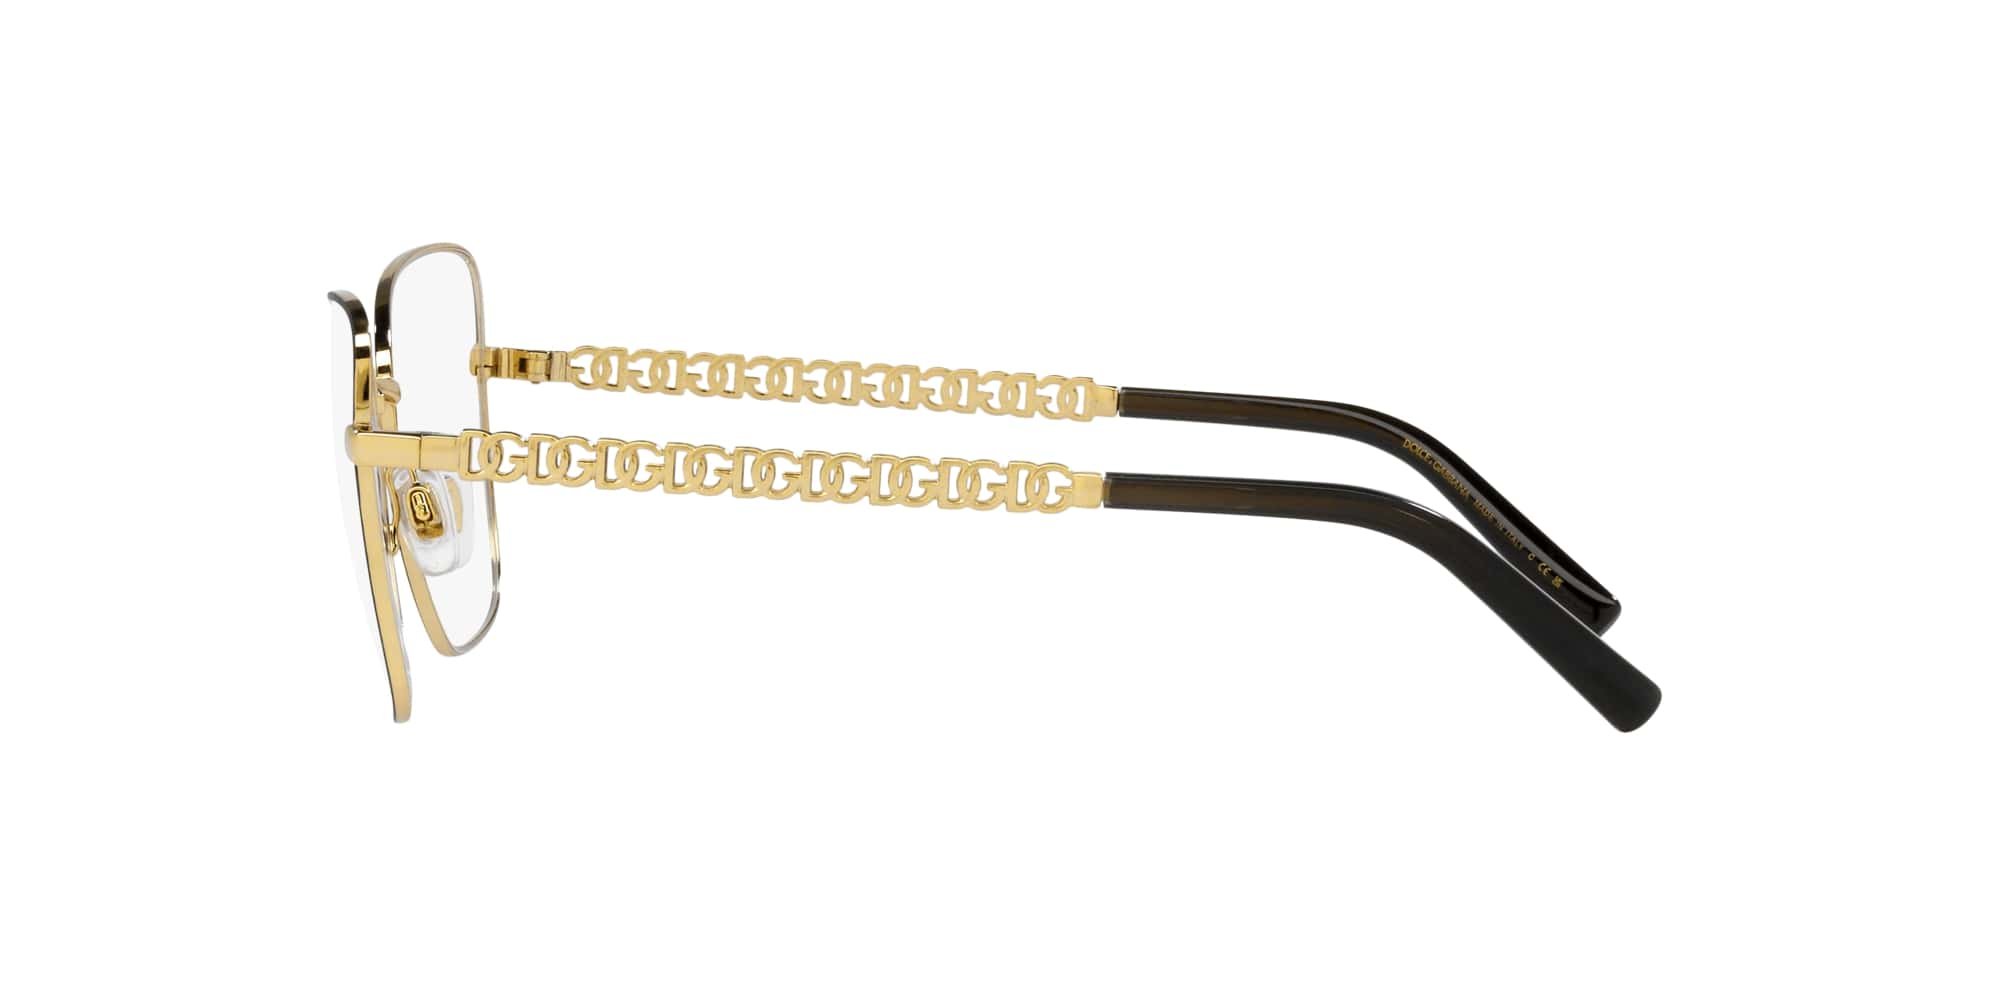 Das Bild zeigt die Korrektionsbrille DG1346 1311 von der Marke D&G in schwarz-gold.